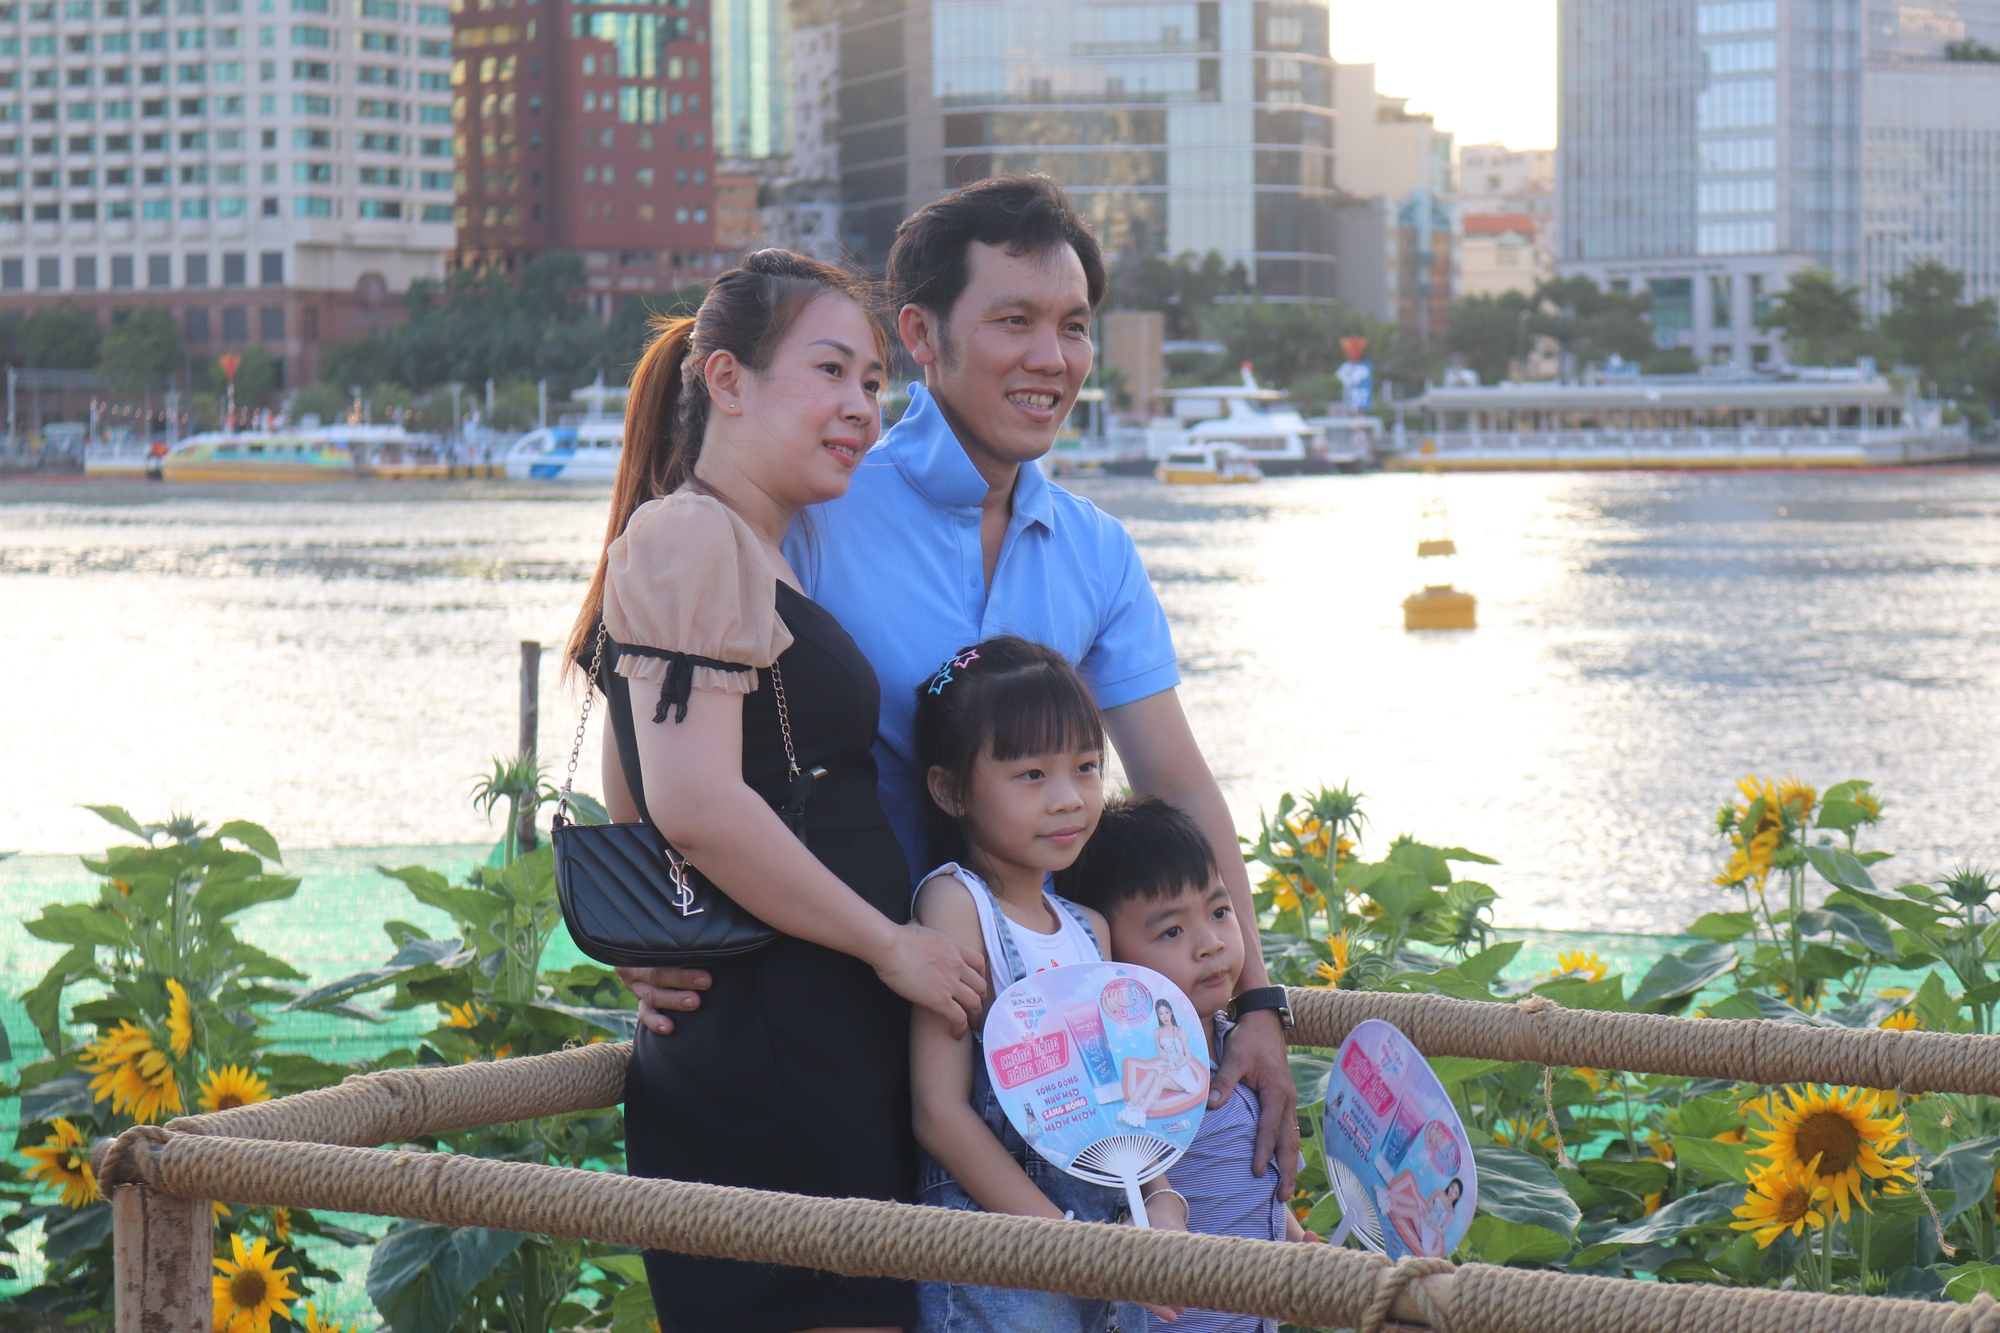 Công viên bờ sông Sài Gòn phía Thủ Thiêm có gì mà người người đang đổ về dịp Tết Dương lịch? - Ảnh 2.